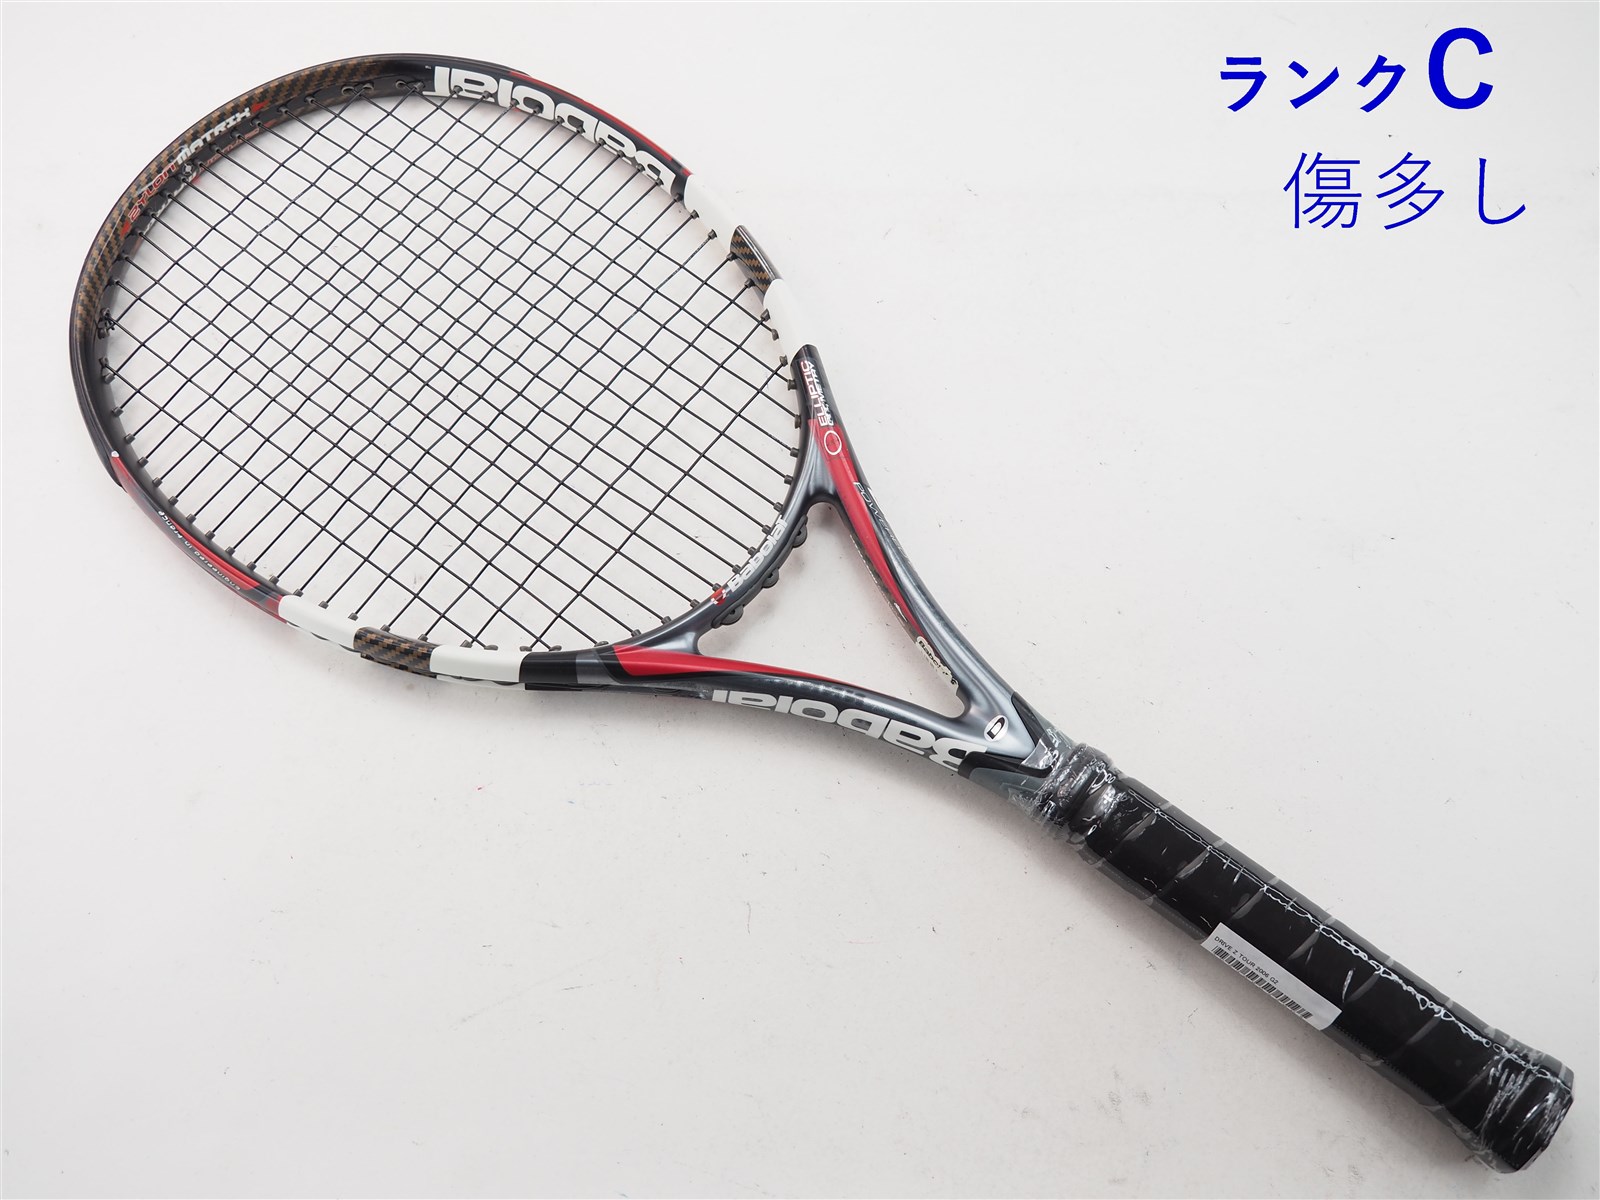 バボラ 硬式テニスラケット ns drive OS